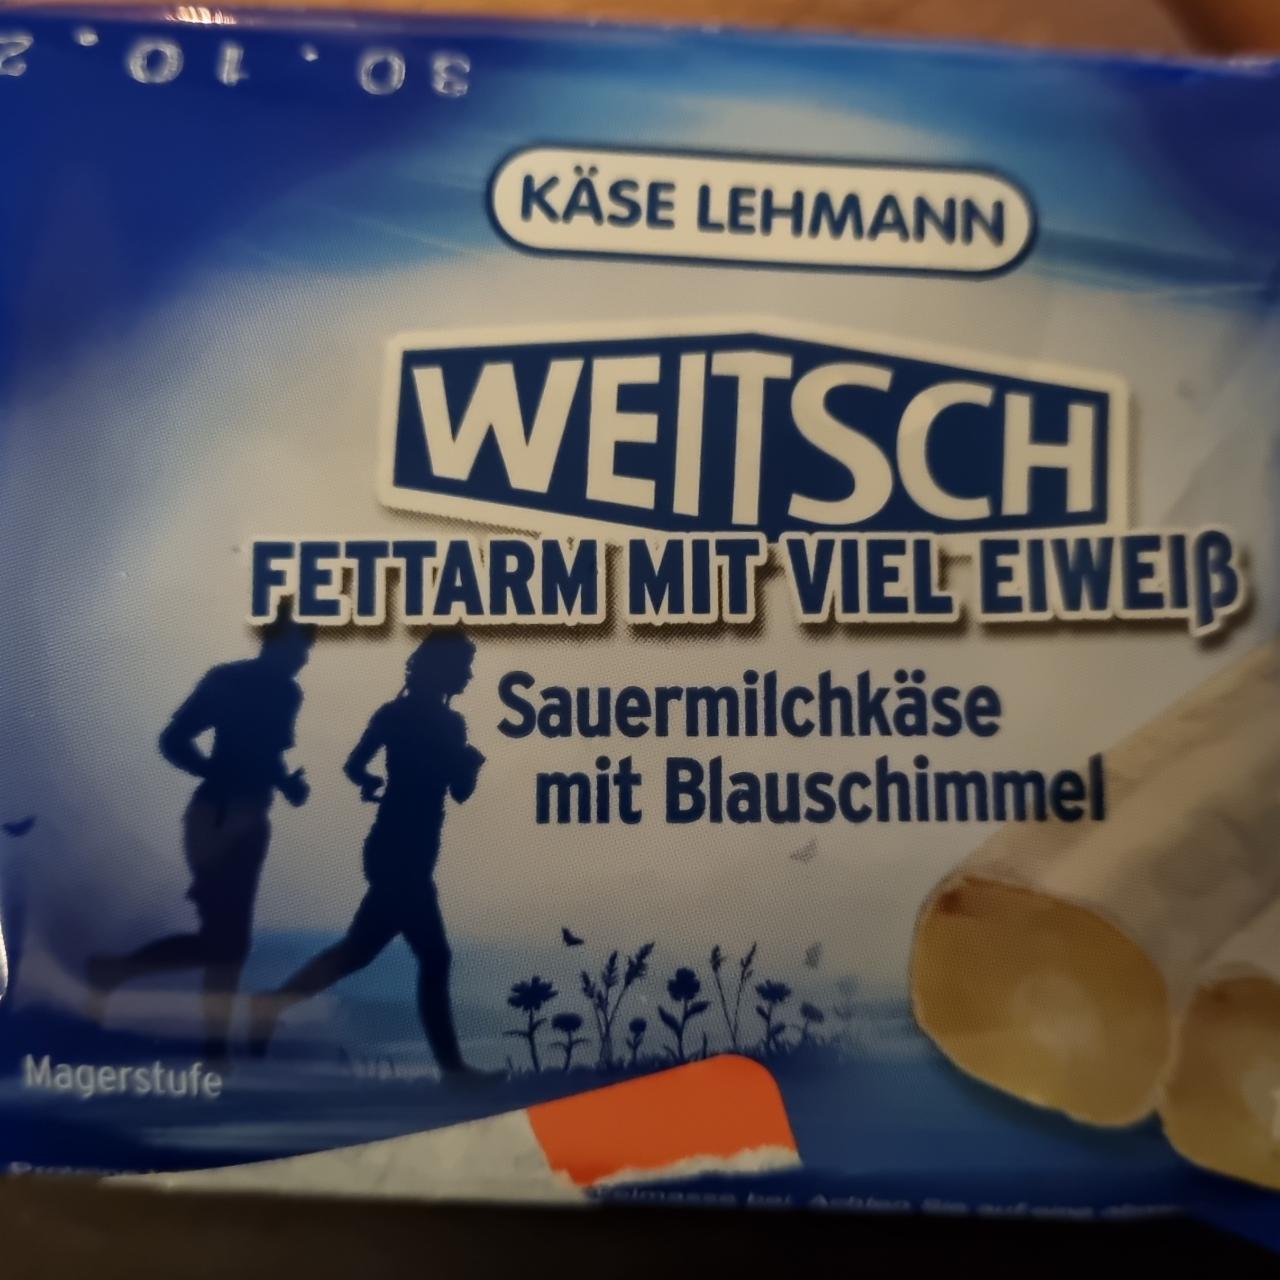 Fotografie - Weitsch fettarm mit viel Eiweiß Käse Lehmann